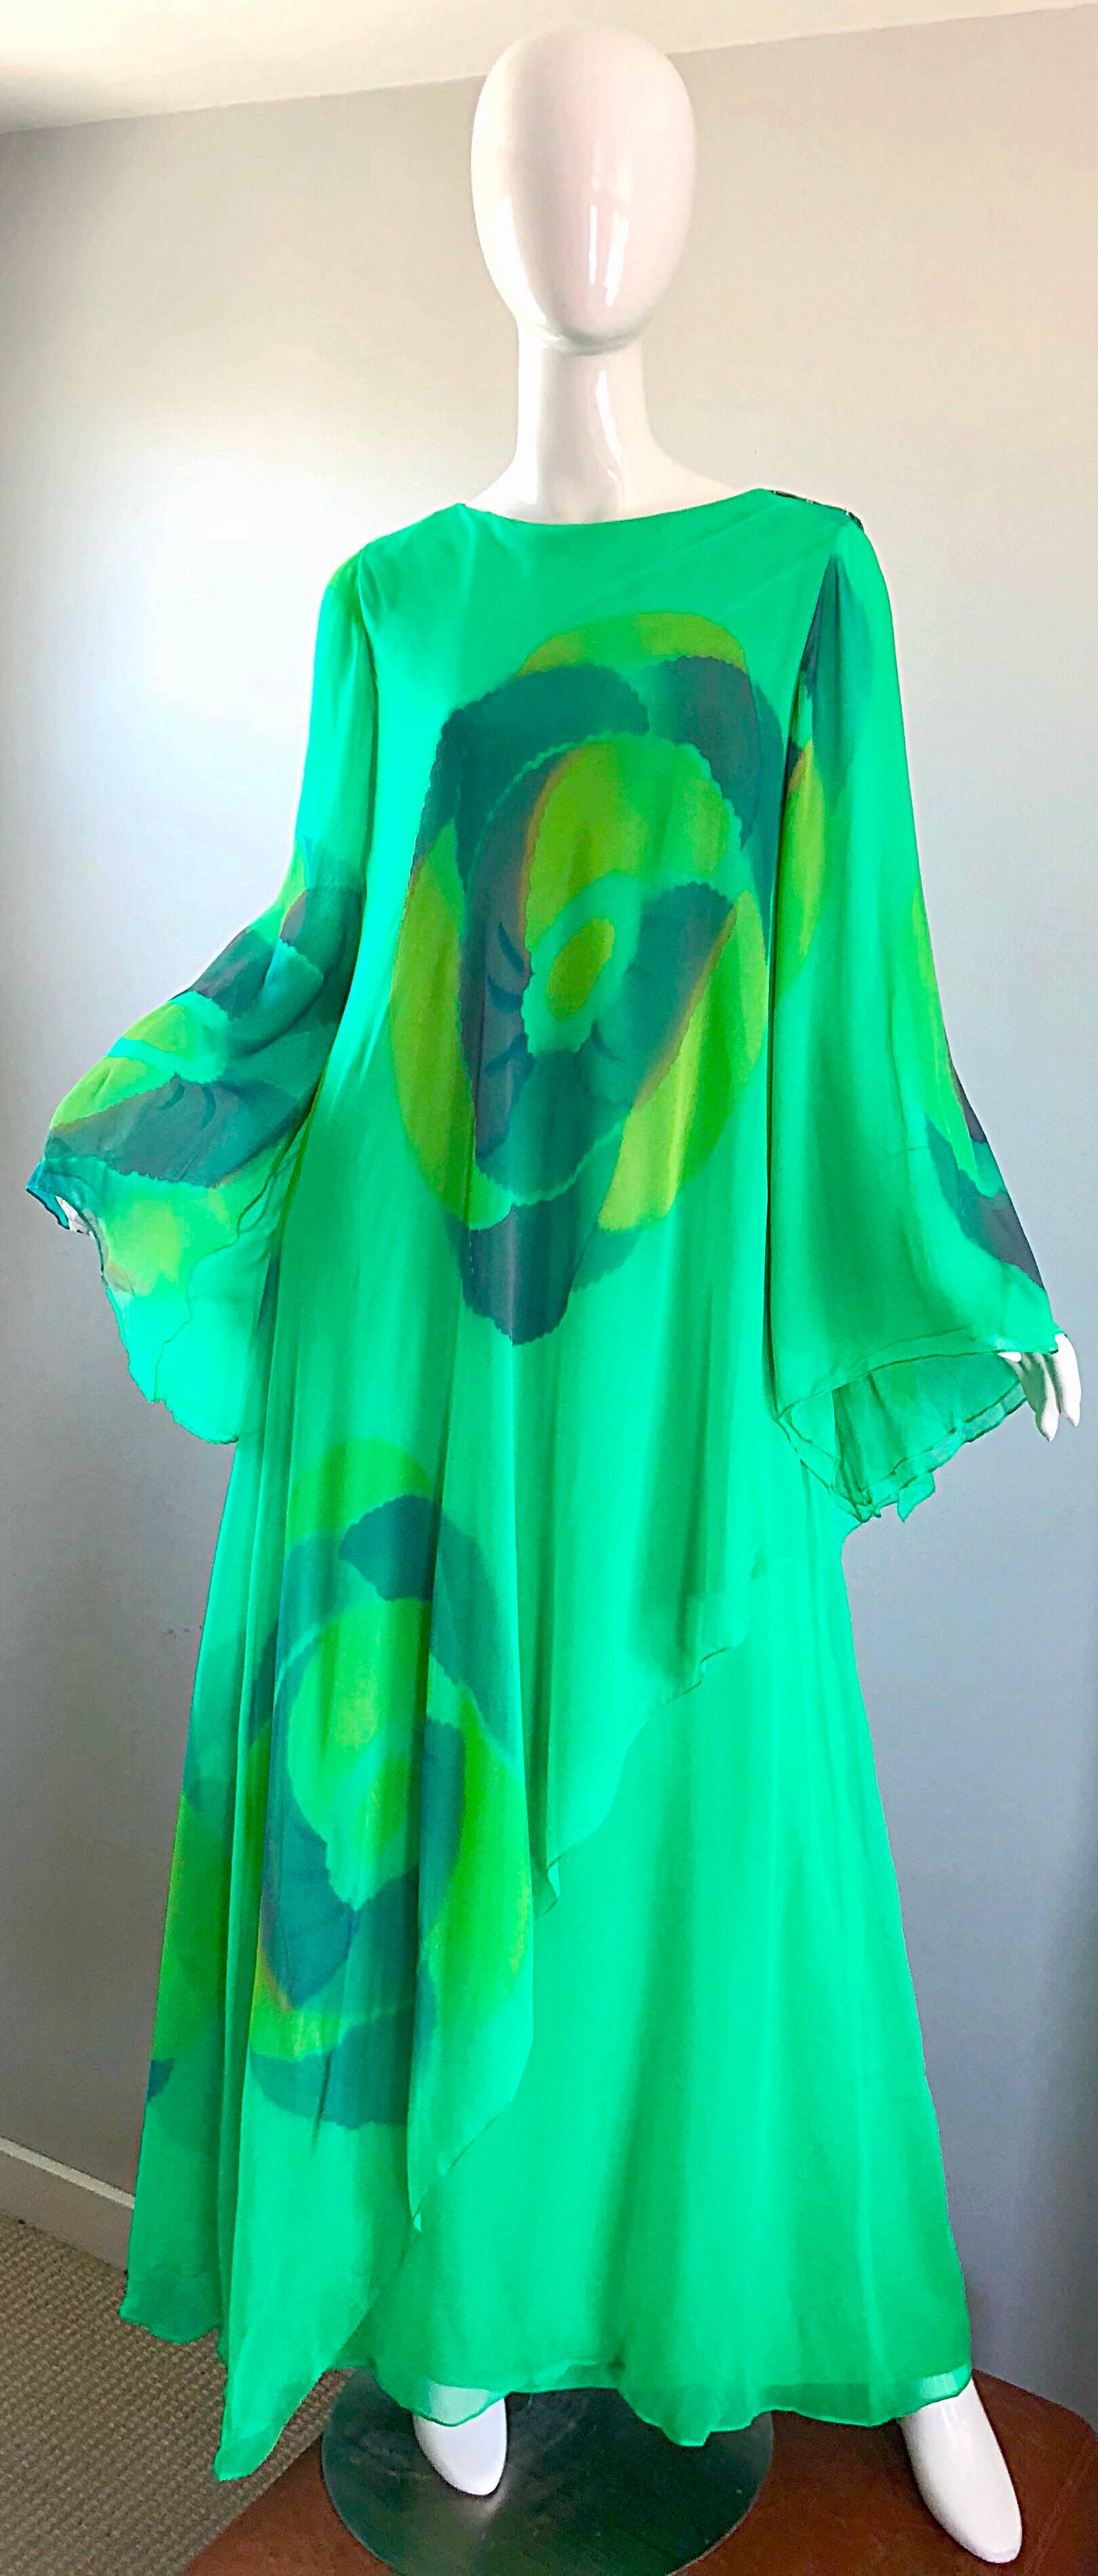 Absolut atemberaubend 1970er TRAVILLIA Hand gemalt kelly grün Kaftan Kleid! Schichten über Schichten aus feinstem Seidenchiffon. Handgemalte Aquarelldrucke auf der Vorderseite, dem Rücken und den Ärmeln. Die nachgiebige, lockere Passform umspielt